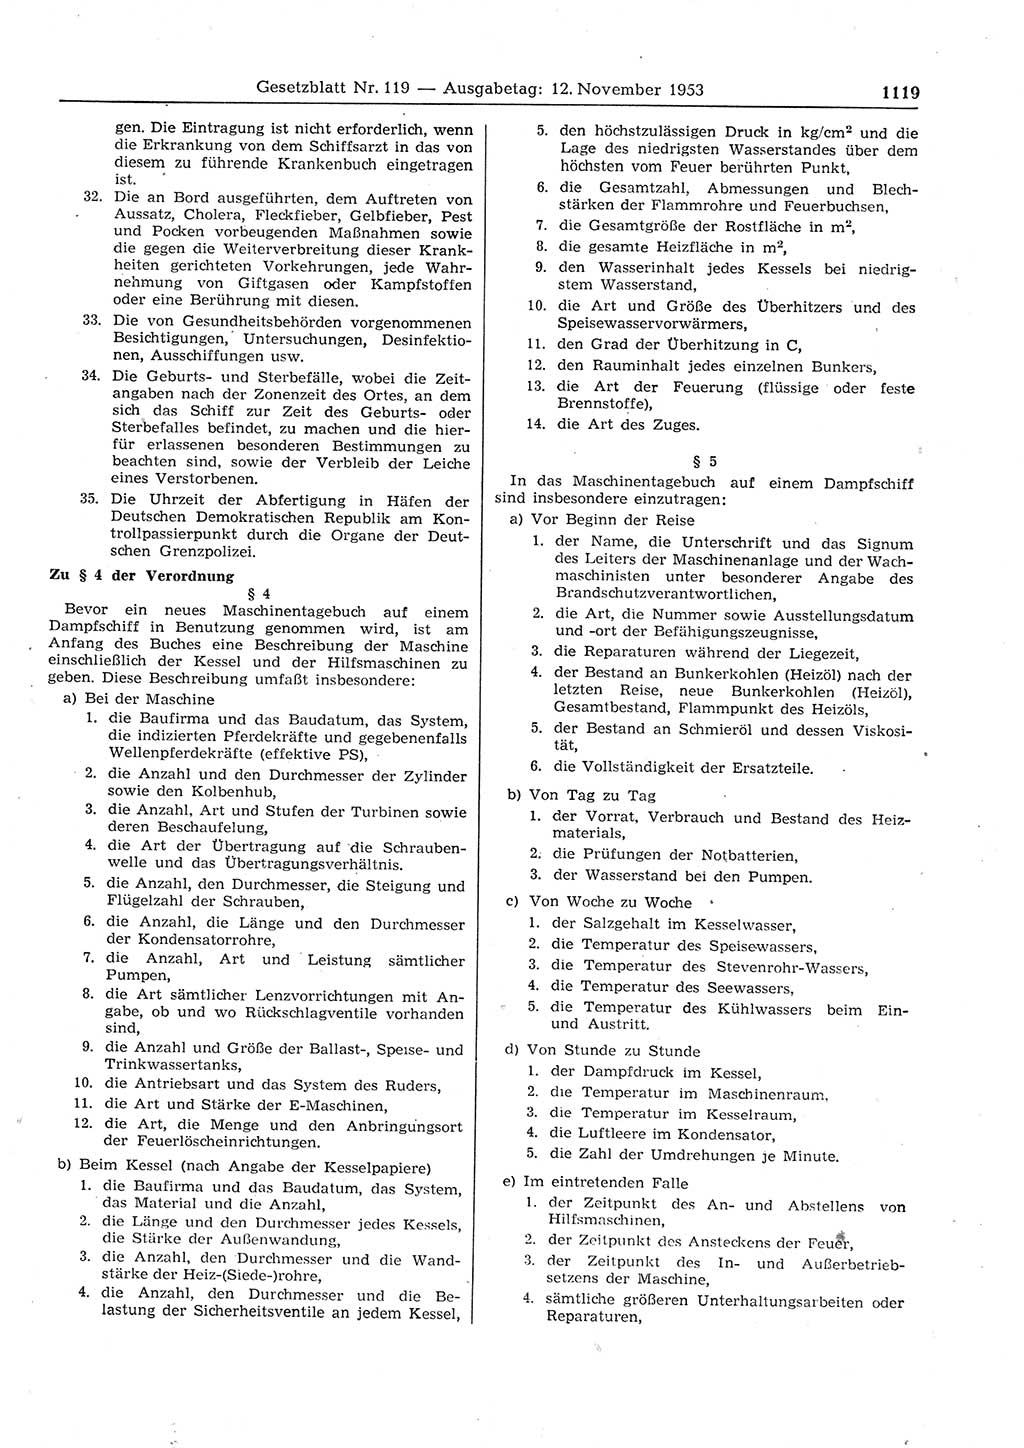 Gesetzblatt (GBl.) der Deutschen Demokratischen Republik (DDR) 1953, Seite 1119 (GBl. DDR 1953, S. 1119)